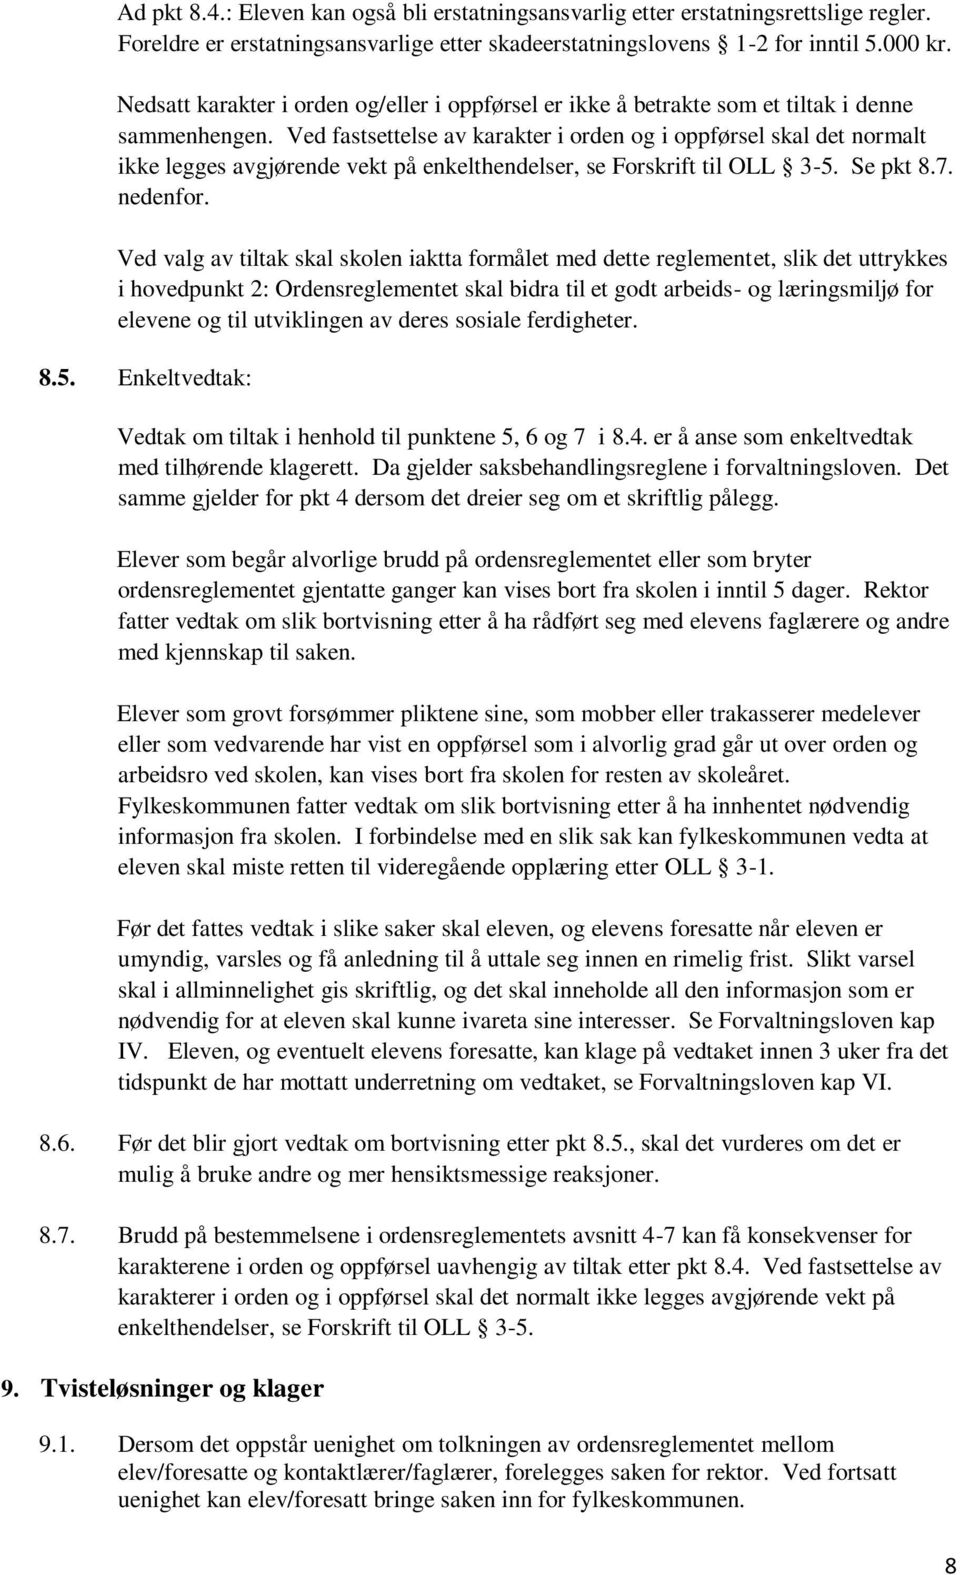 Ved fastsettelse av karakter i orden og i oppførsel skal det normalt ikke legges avgjørende vekt på enkelthendelser, se Forskrift til OLL 3-5. Se pkt 8.7. nedenfor.